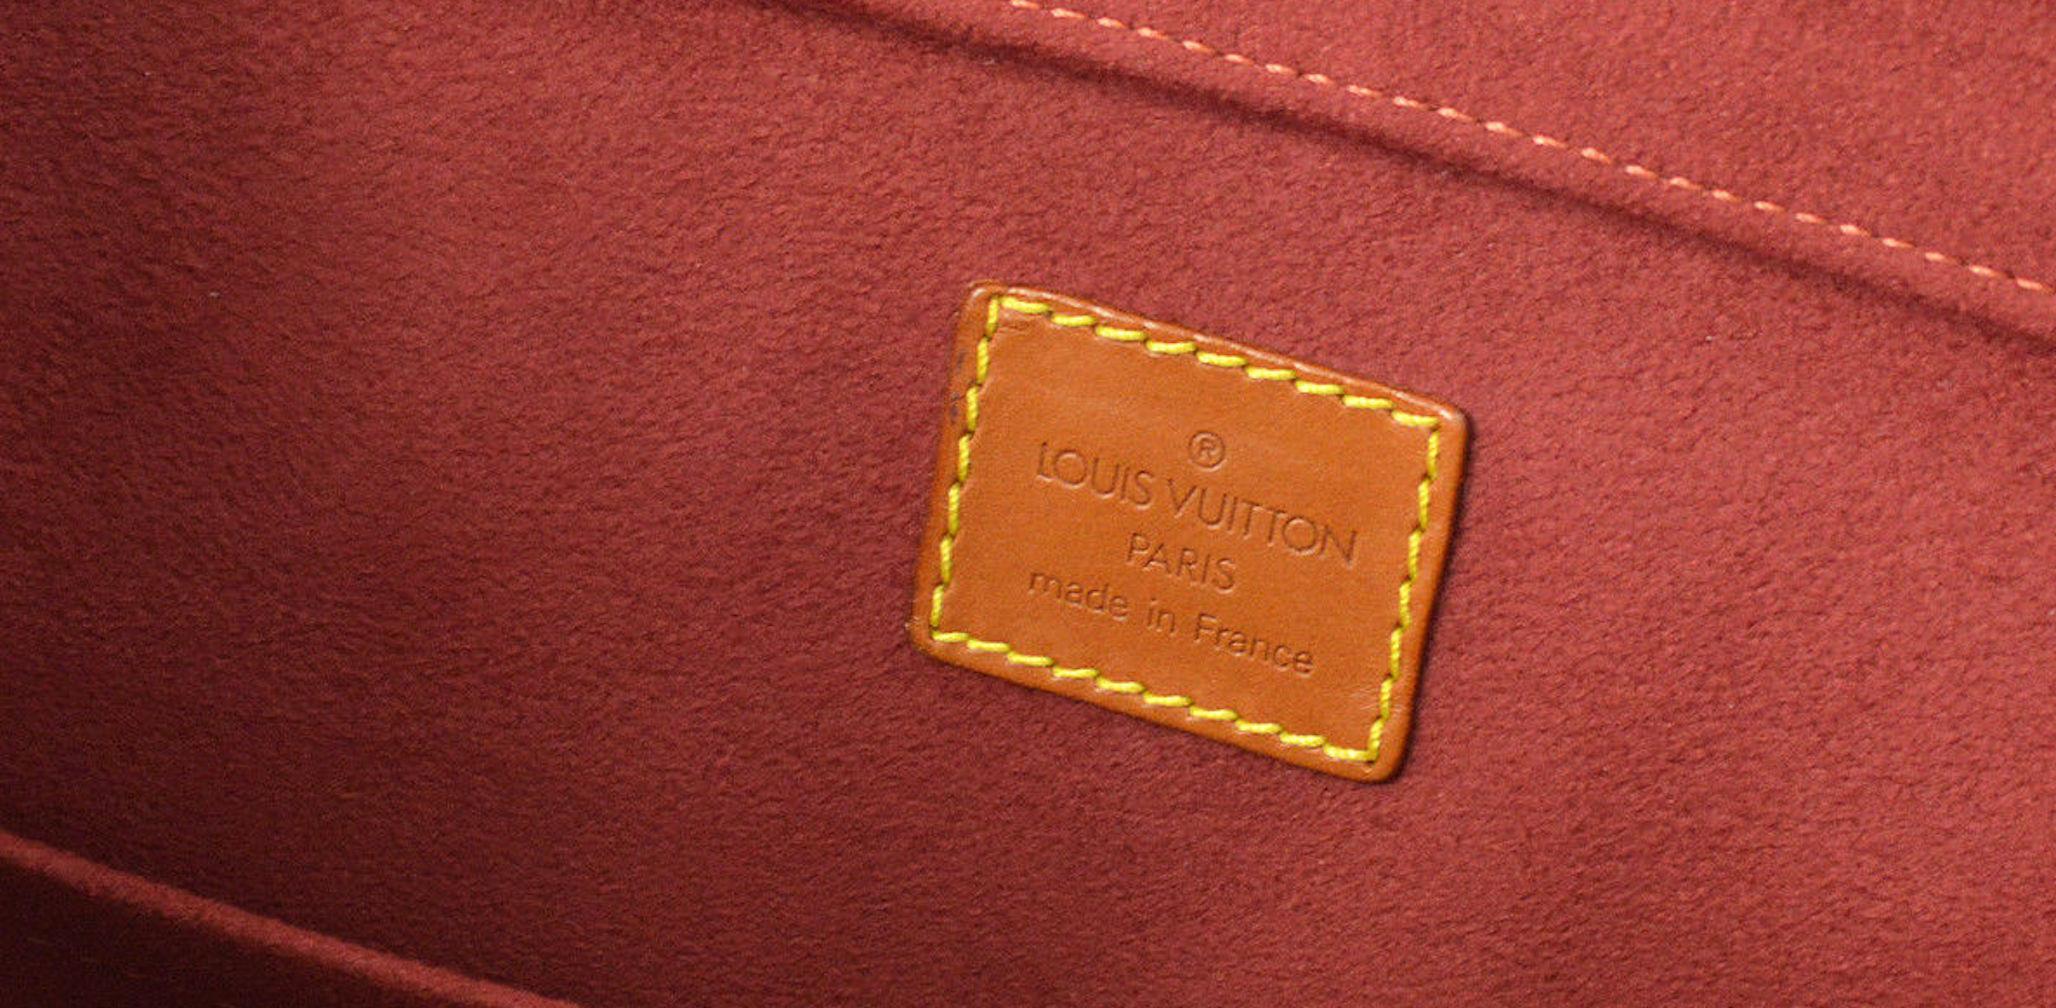 Louis Vuitton Cognac Leather Carryall Men's Women's Travel Top Handle Tote Bag 3